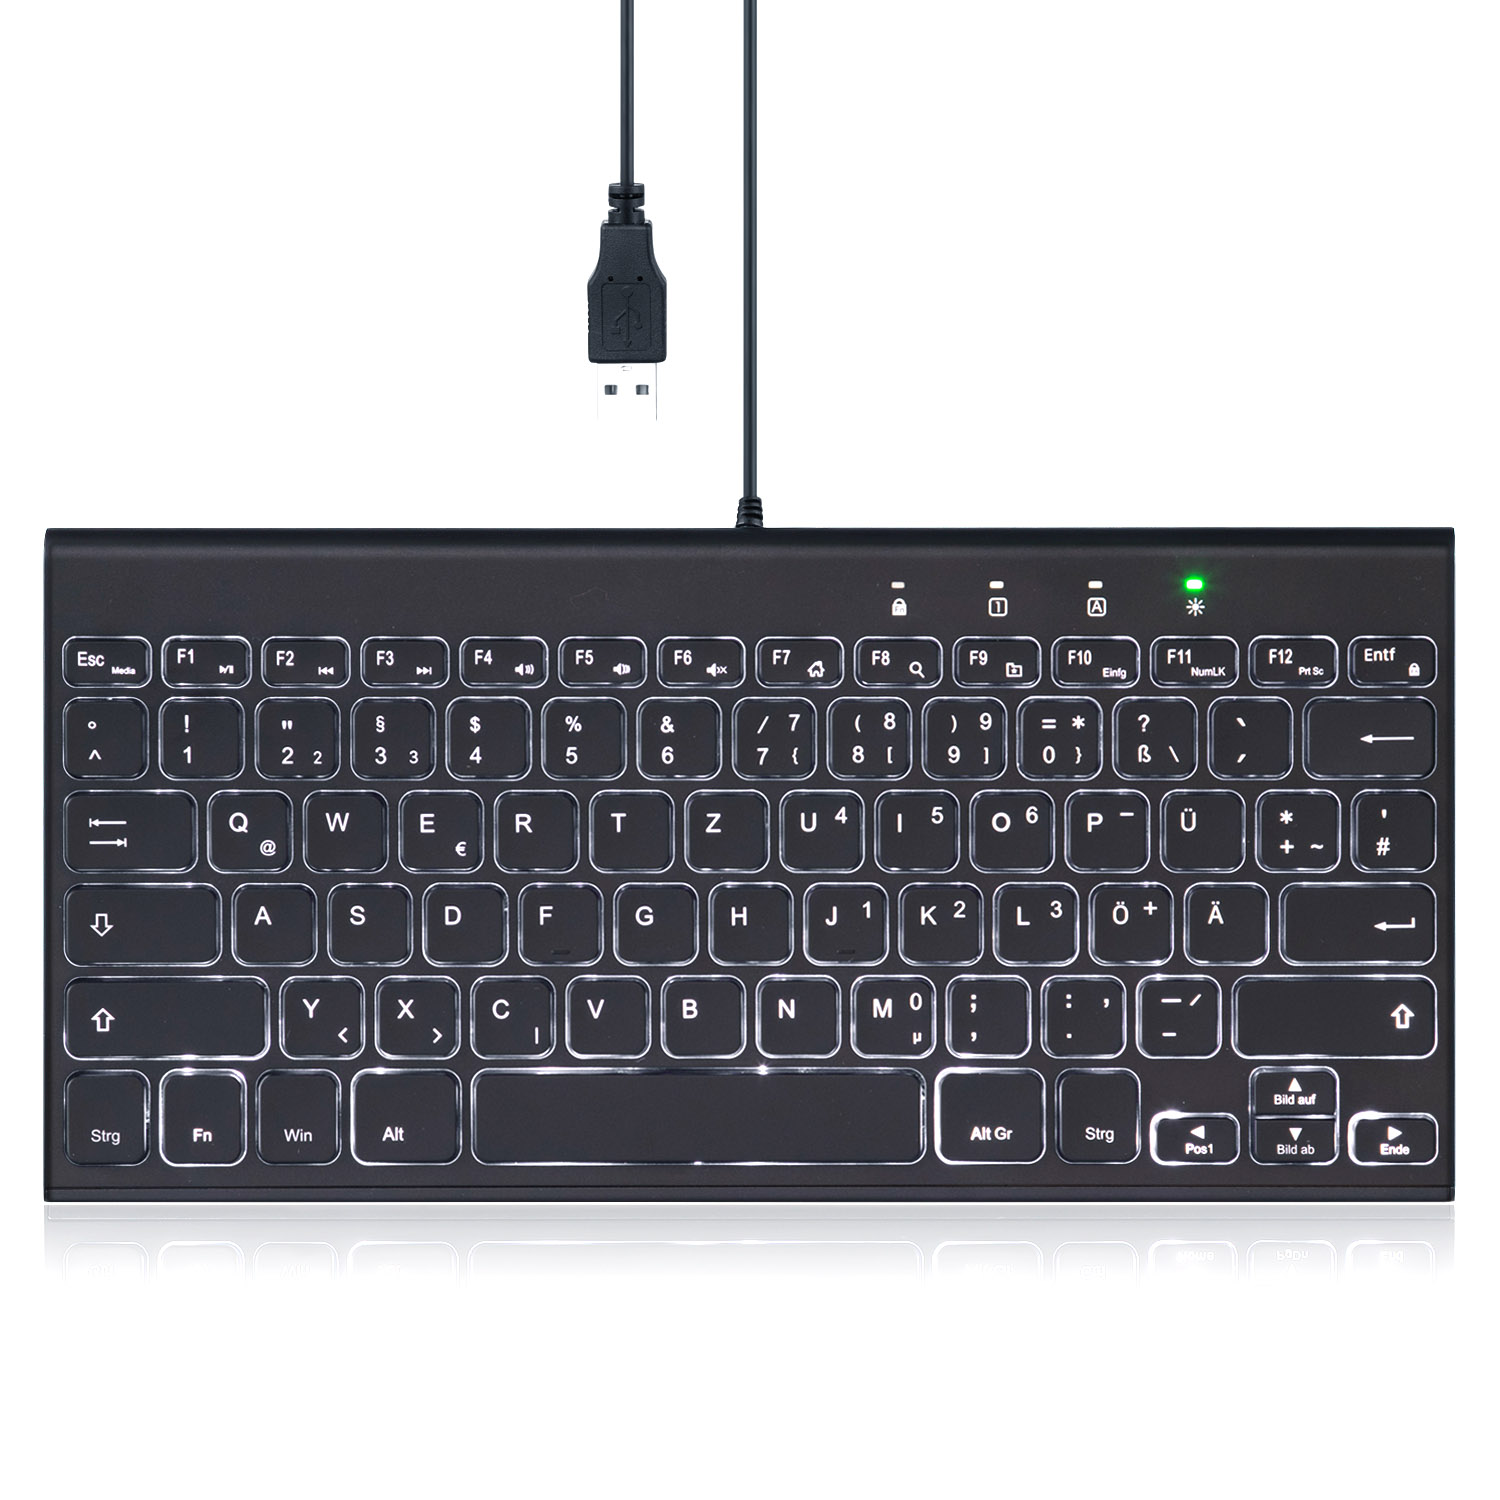 PERIXX PERIBOARD-429, Tastatur